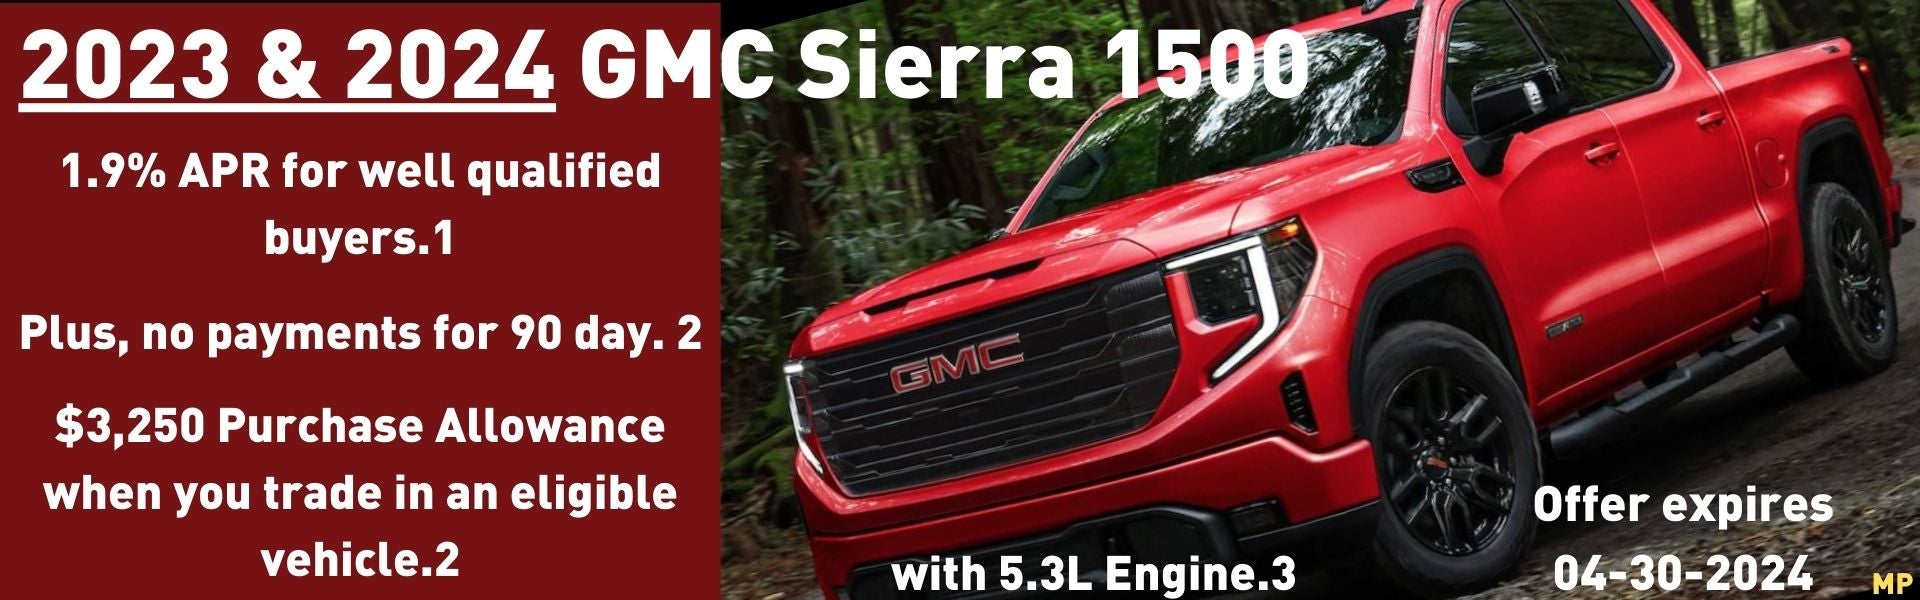 2023 GMC Sierra 1500